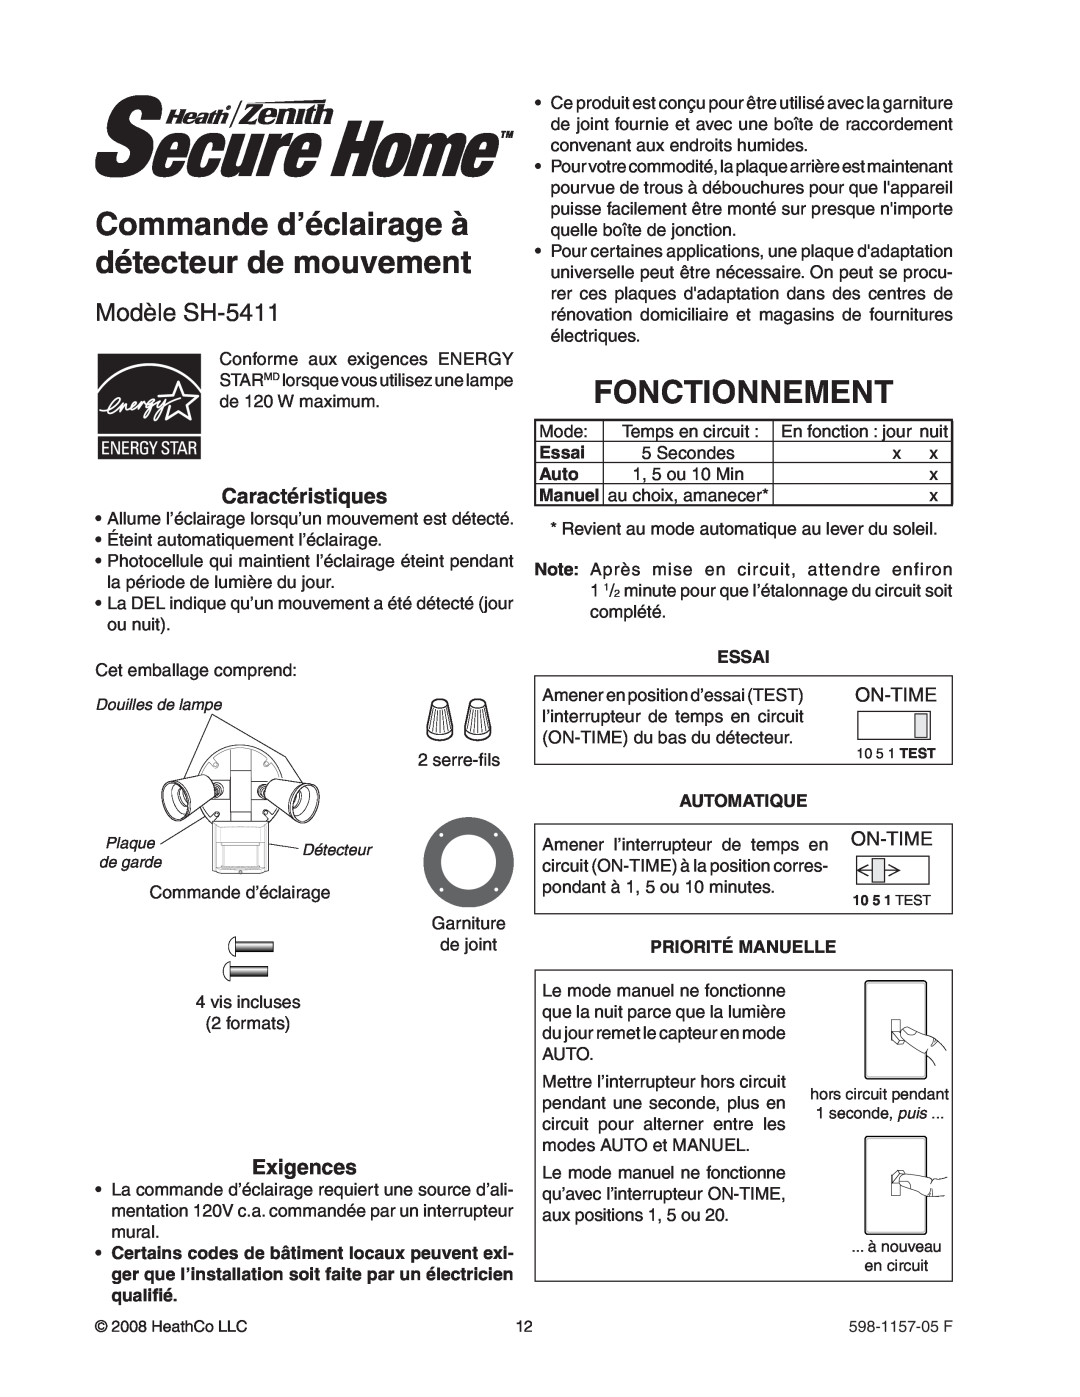 Heath Zenith manual Commande d’éclairage à détecteur de mouvement, Fonctionnement, Modèle SH-5411, Essai, Auto, Manuel 